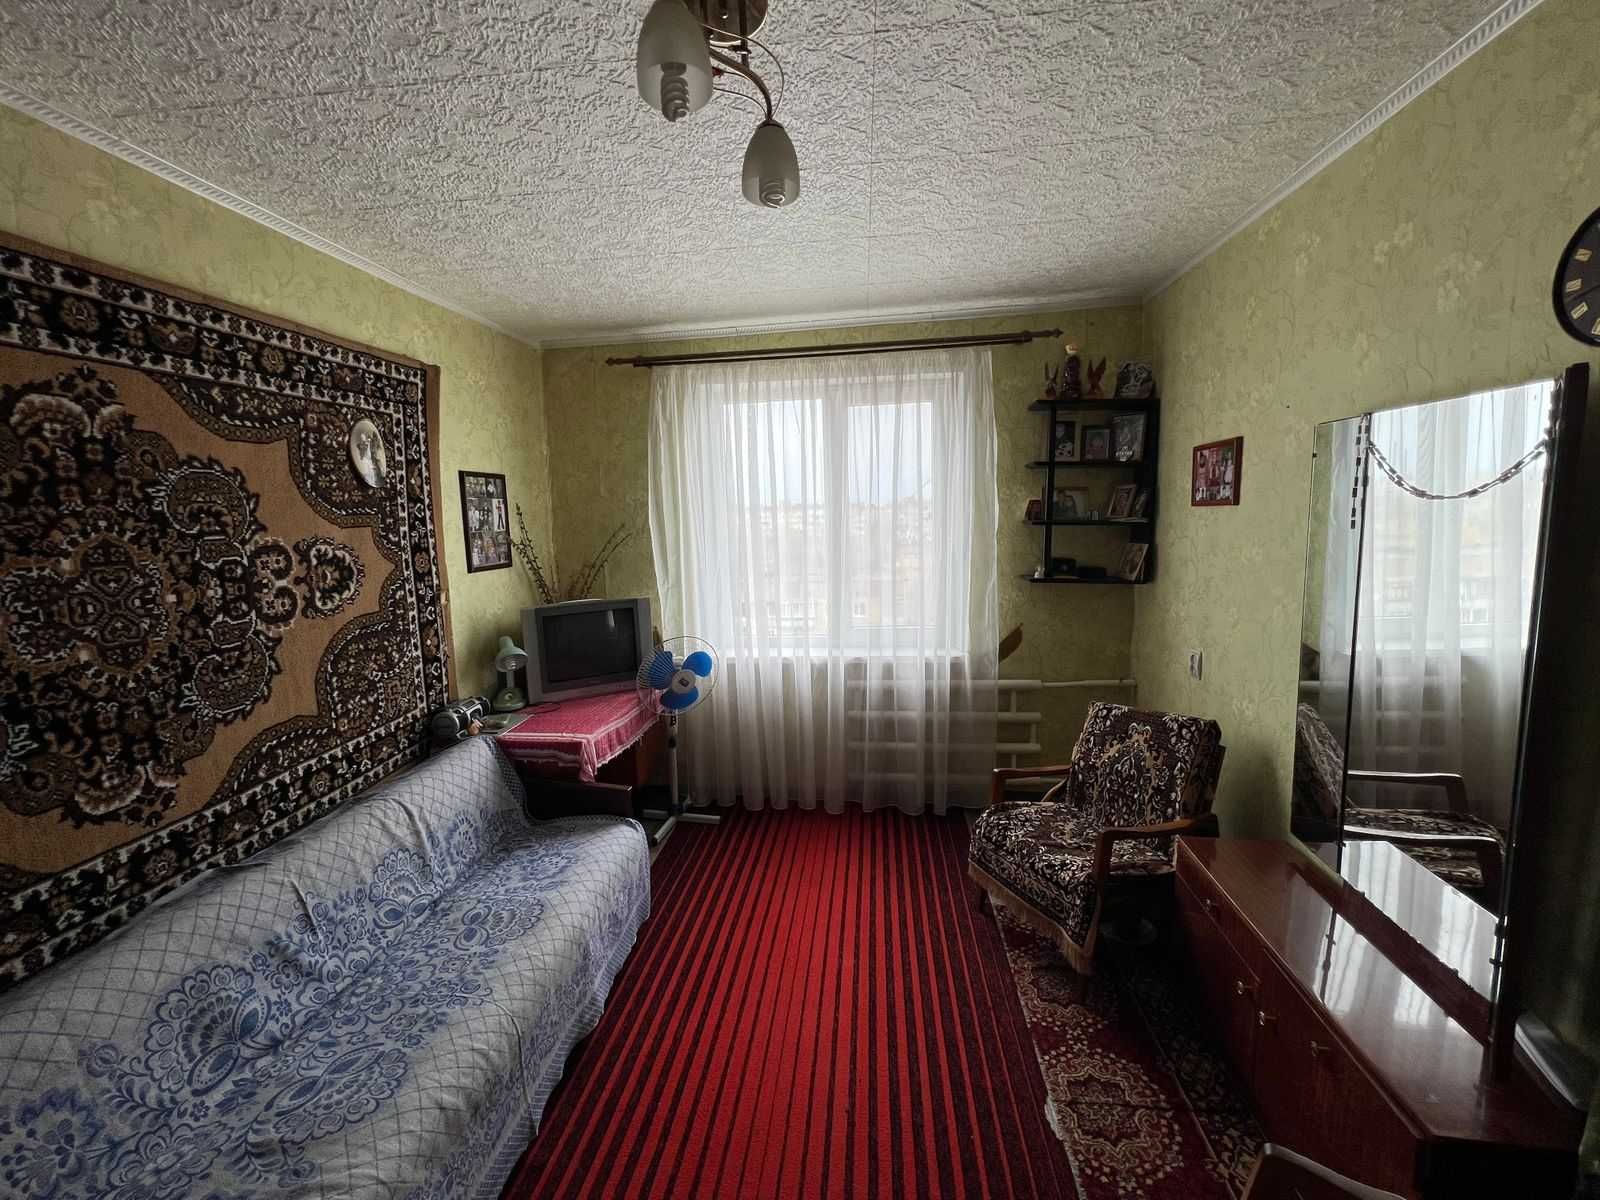 Продам 3-х комнатную квартиру в Славянске. Первый этаж.